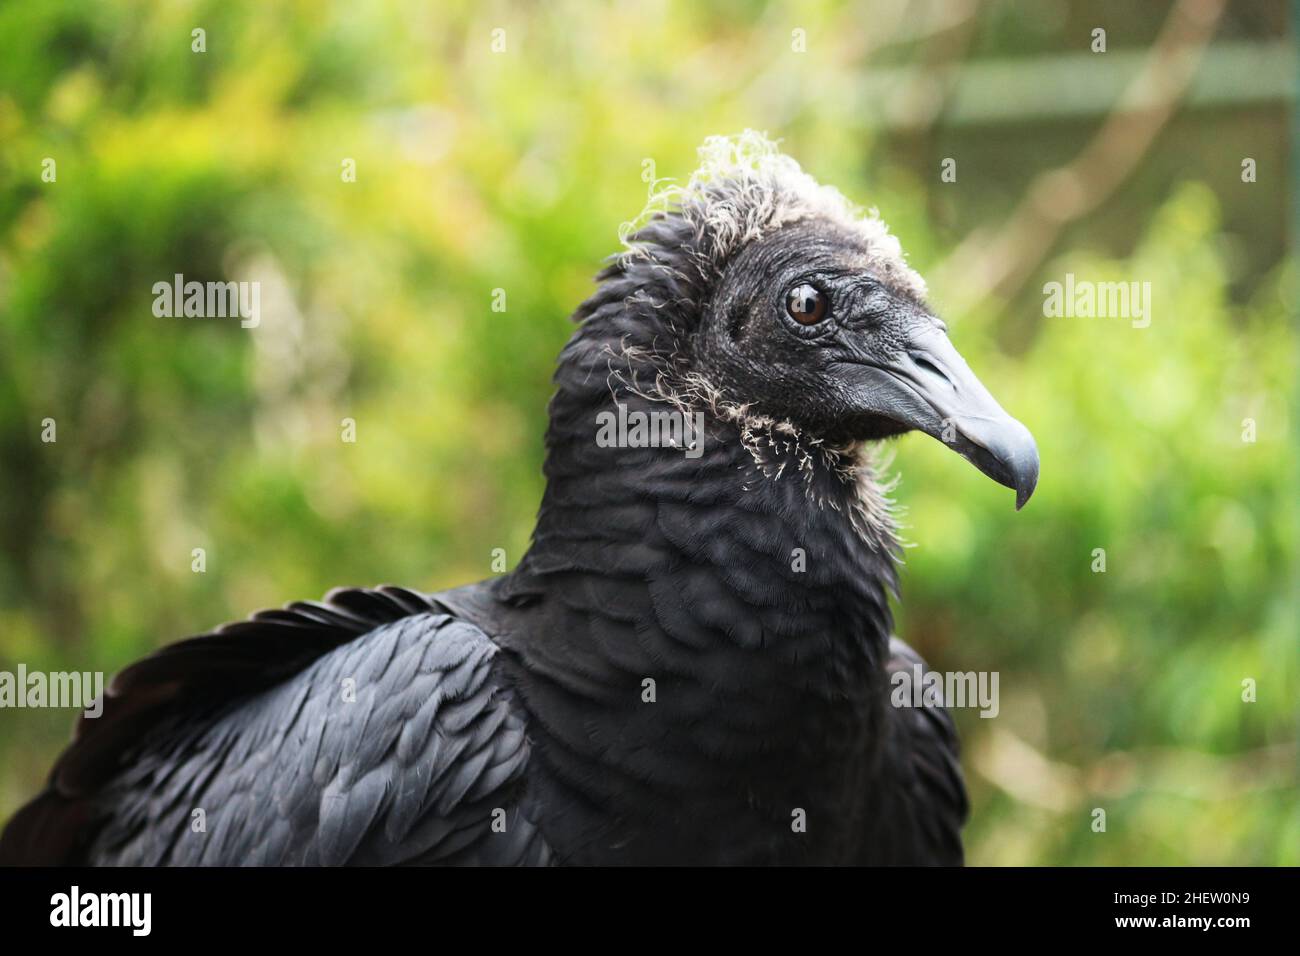 Retrato de la Vicultura Negra, Coragyps atratus, que es una de las aves más comunes en cualquier región de Brasil, tiene un distr neonártico y neotropical Foto de stock